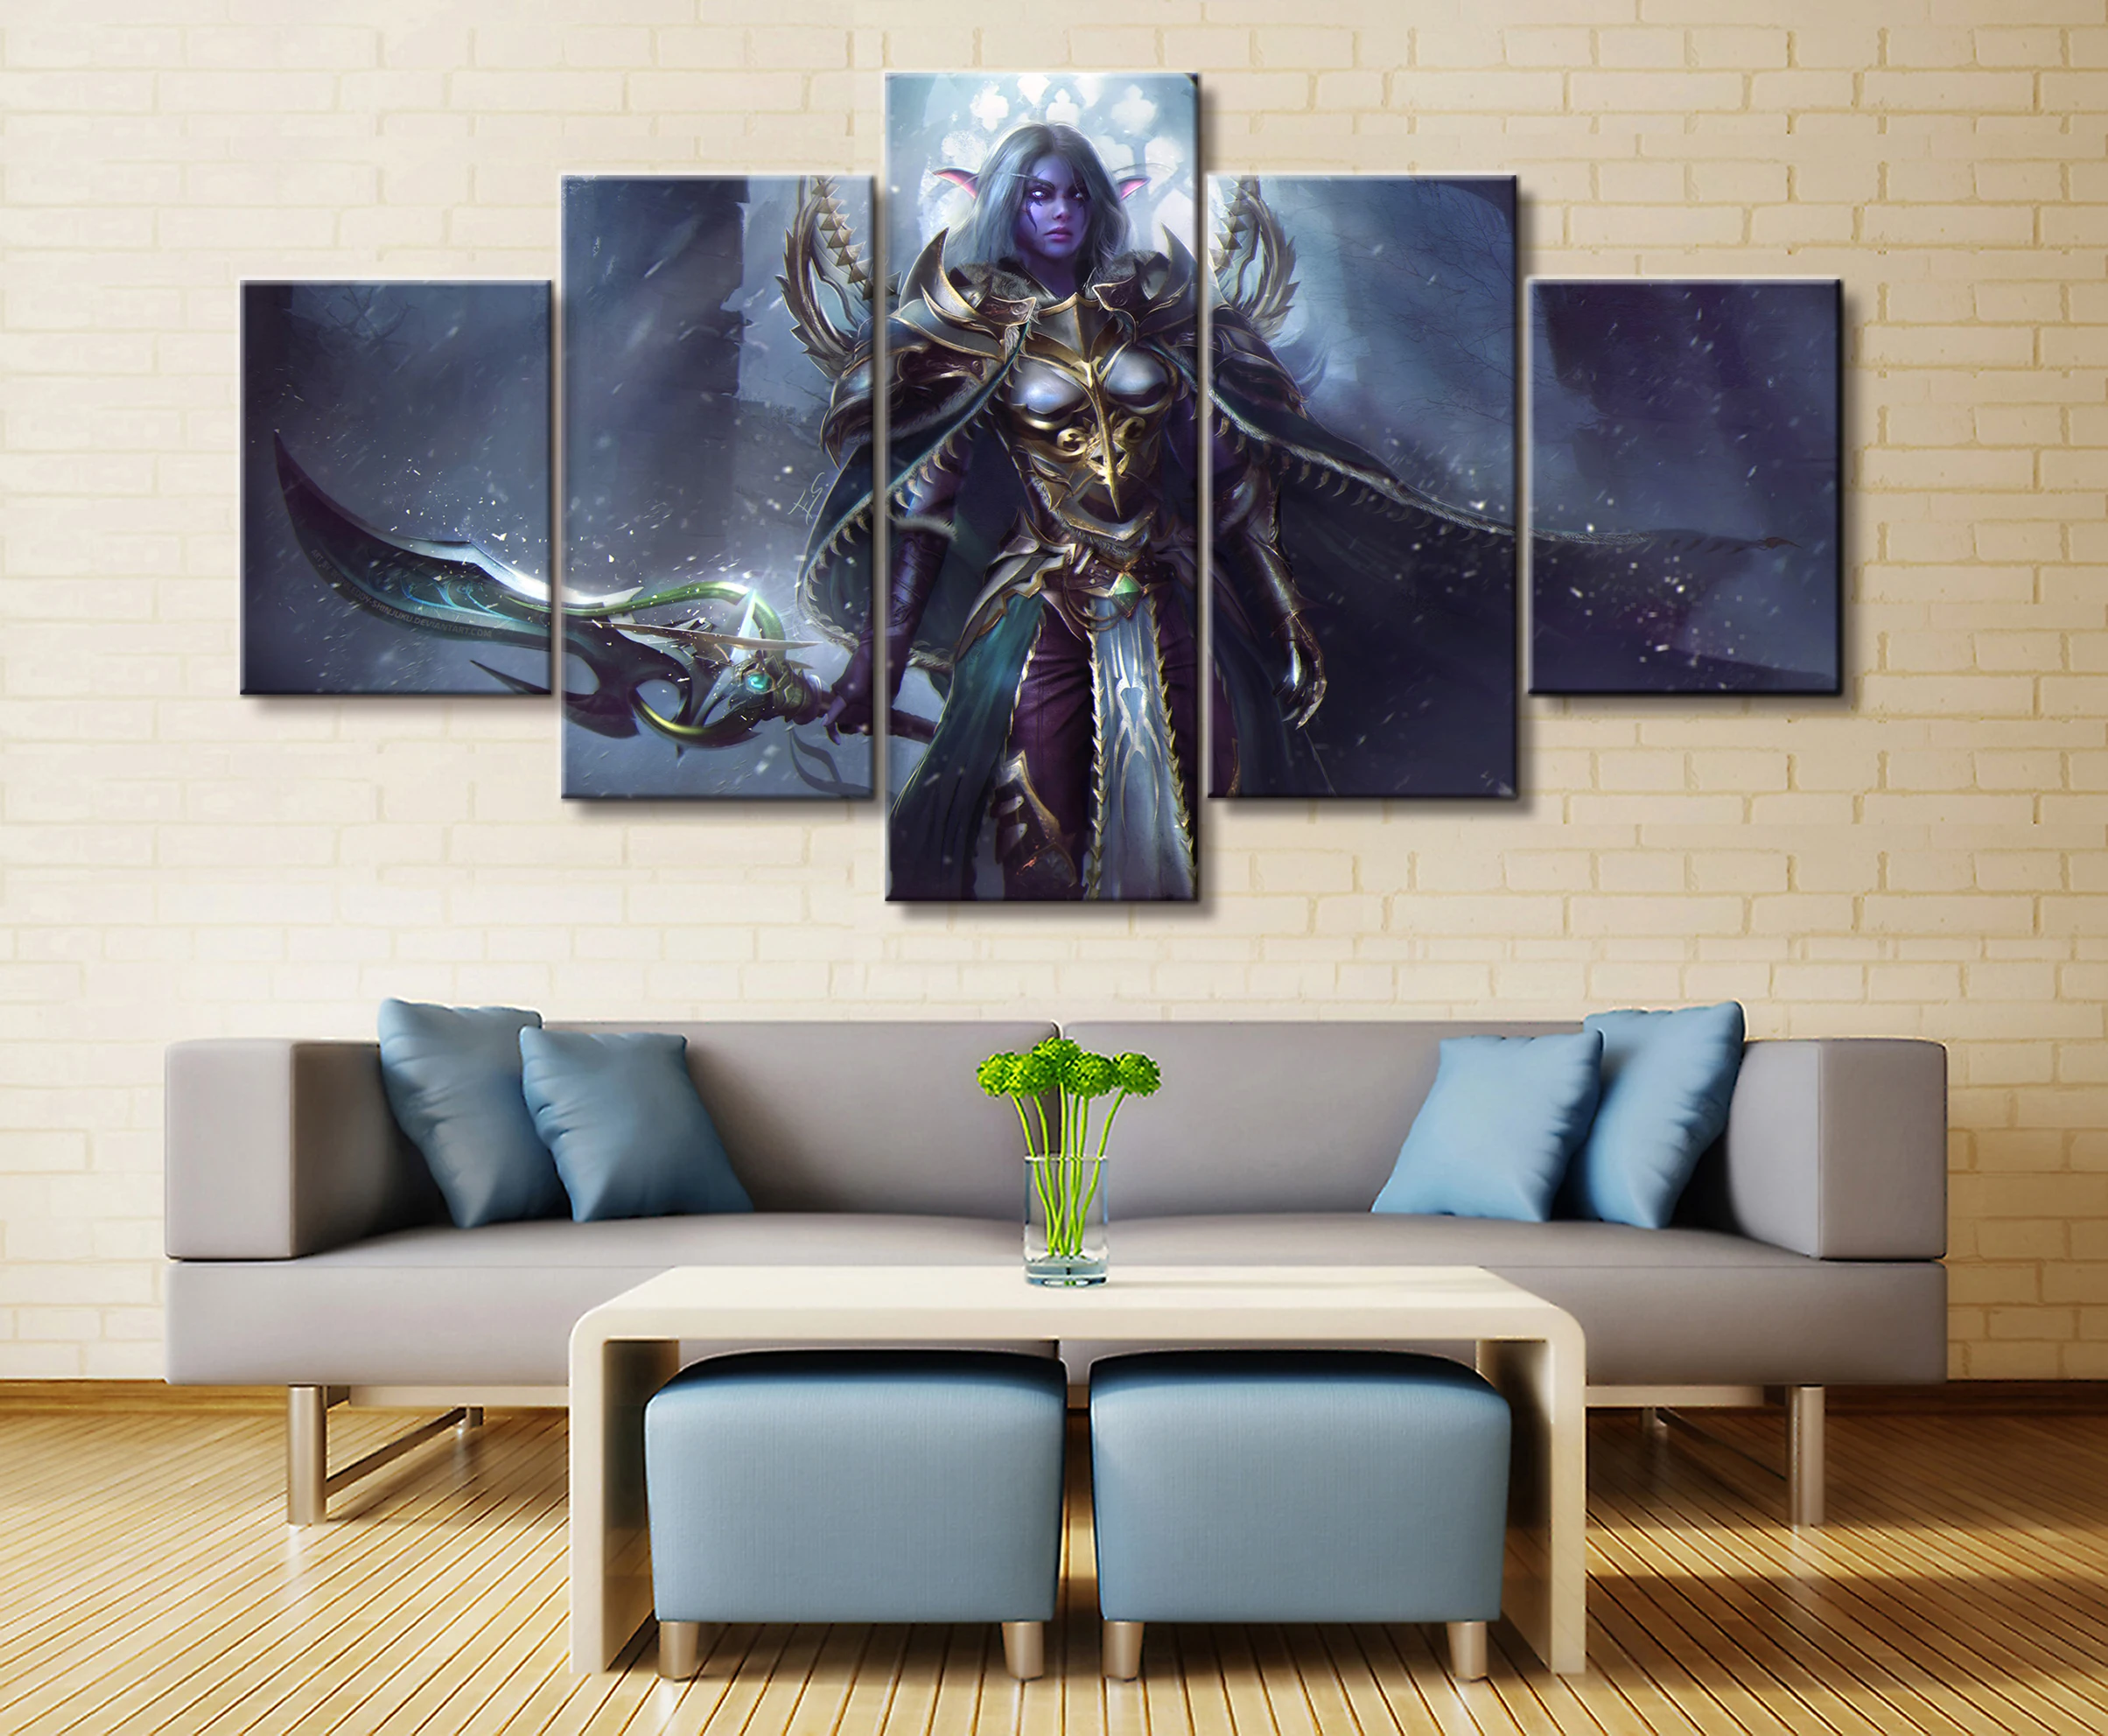 5 шт. видео игра WOW Warcraft DOTA 2 картина плакат декоративная Фреска художественный Декор стены комнаты холст живопись